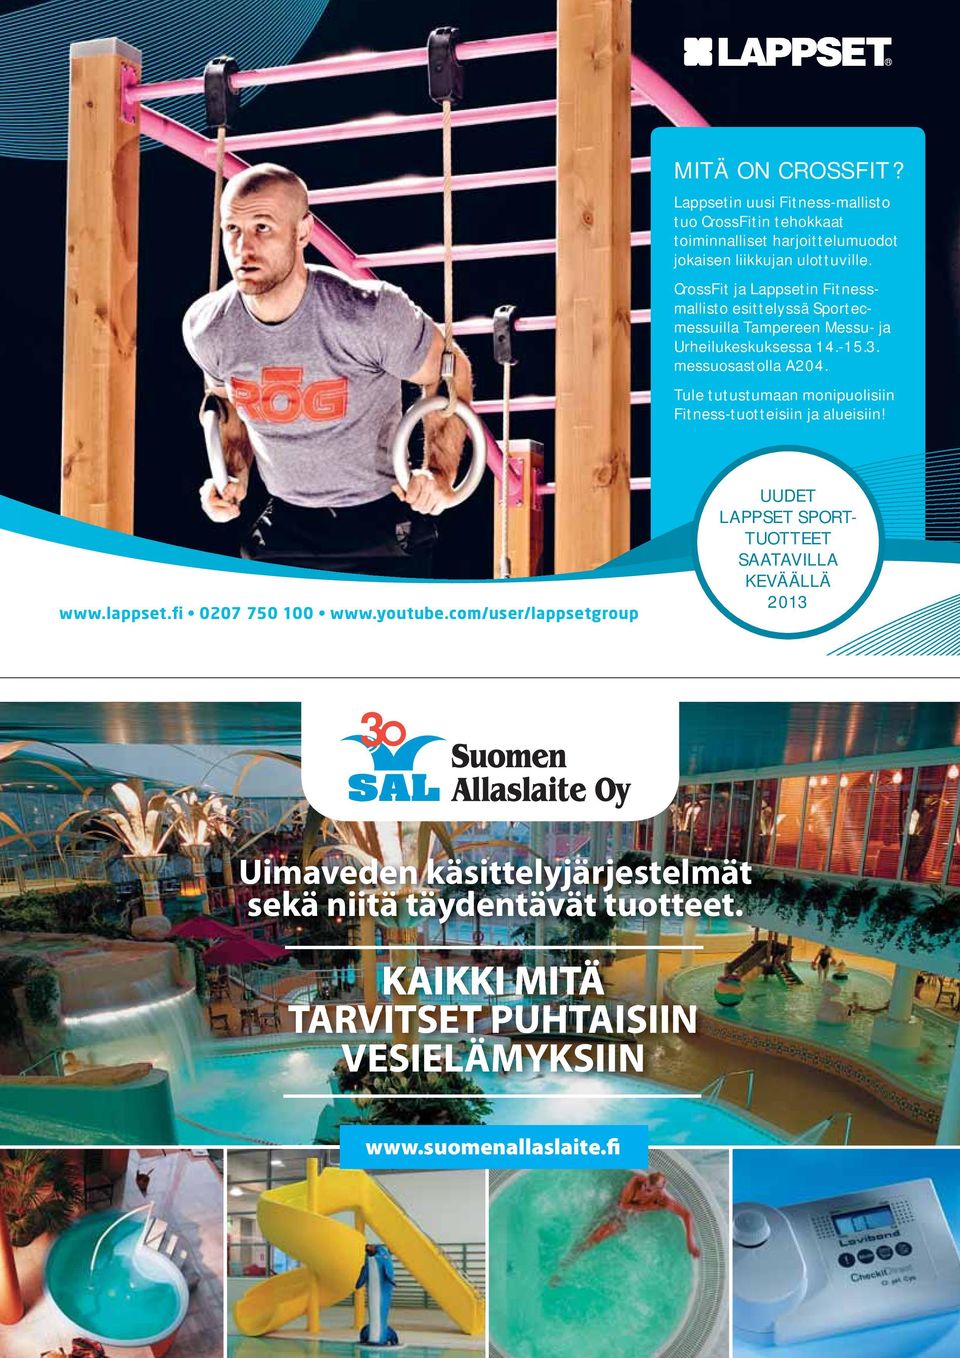 CrossFit ja Lappsetin Fitnessmallisto esittelyssä Sportecmessuilla Tampereen Messu- ja Urheilukeskuksessa 14.-15.3.